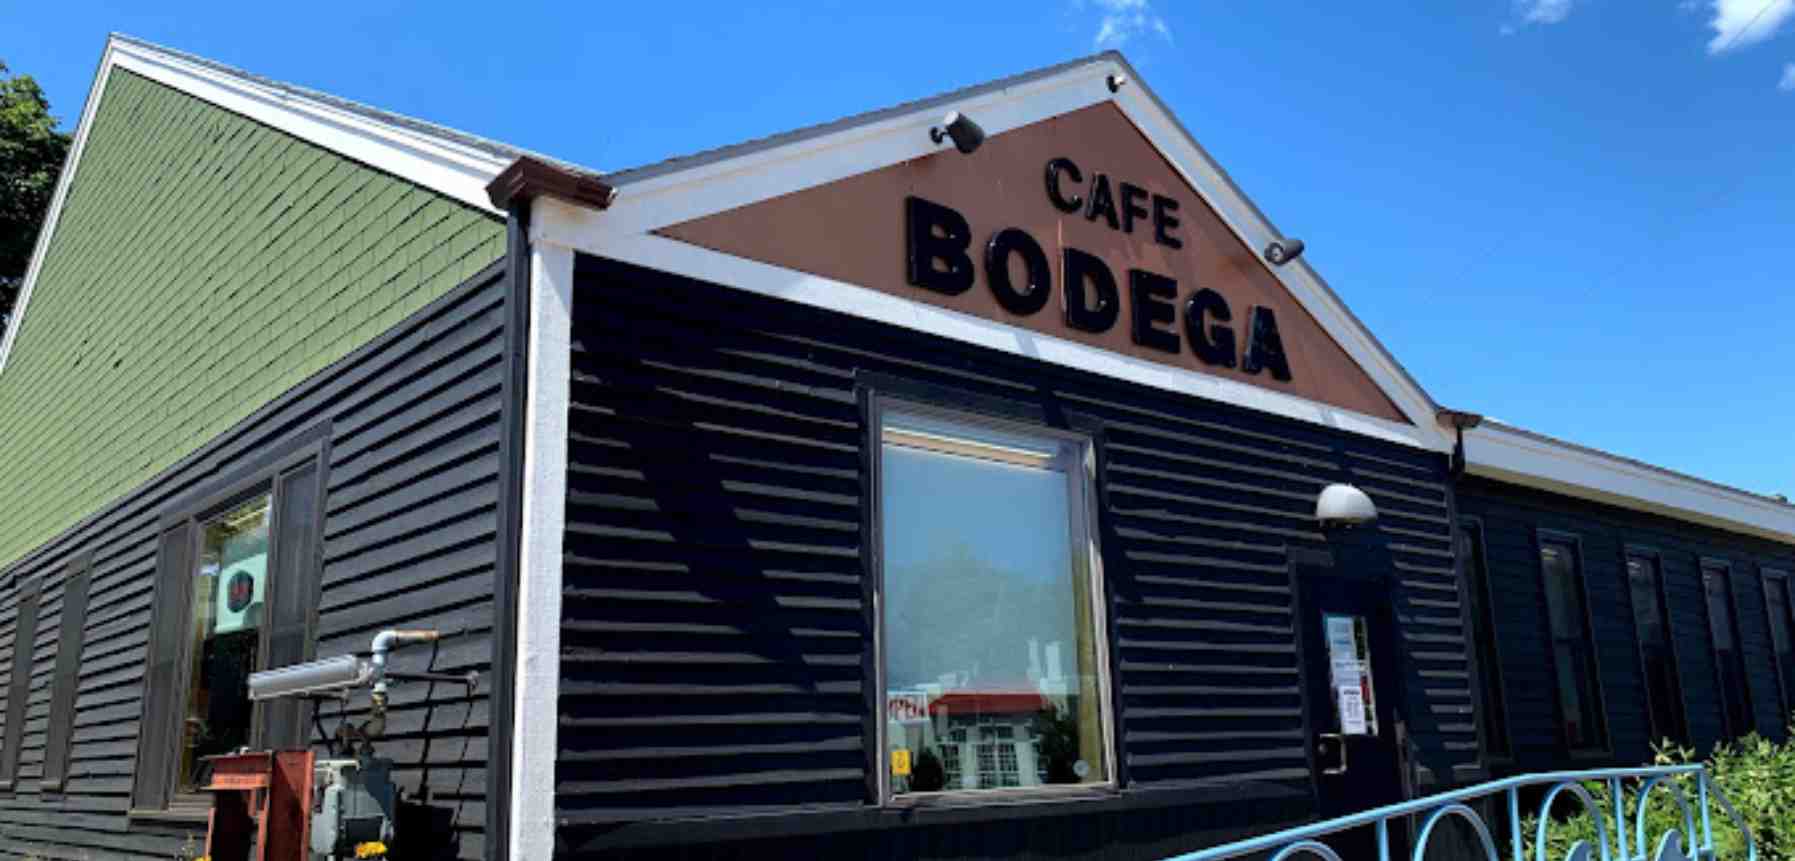 Cafe Bodega